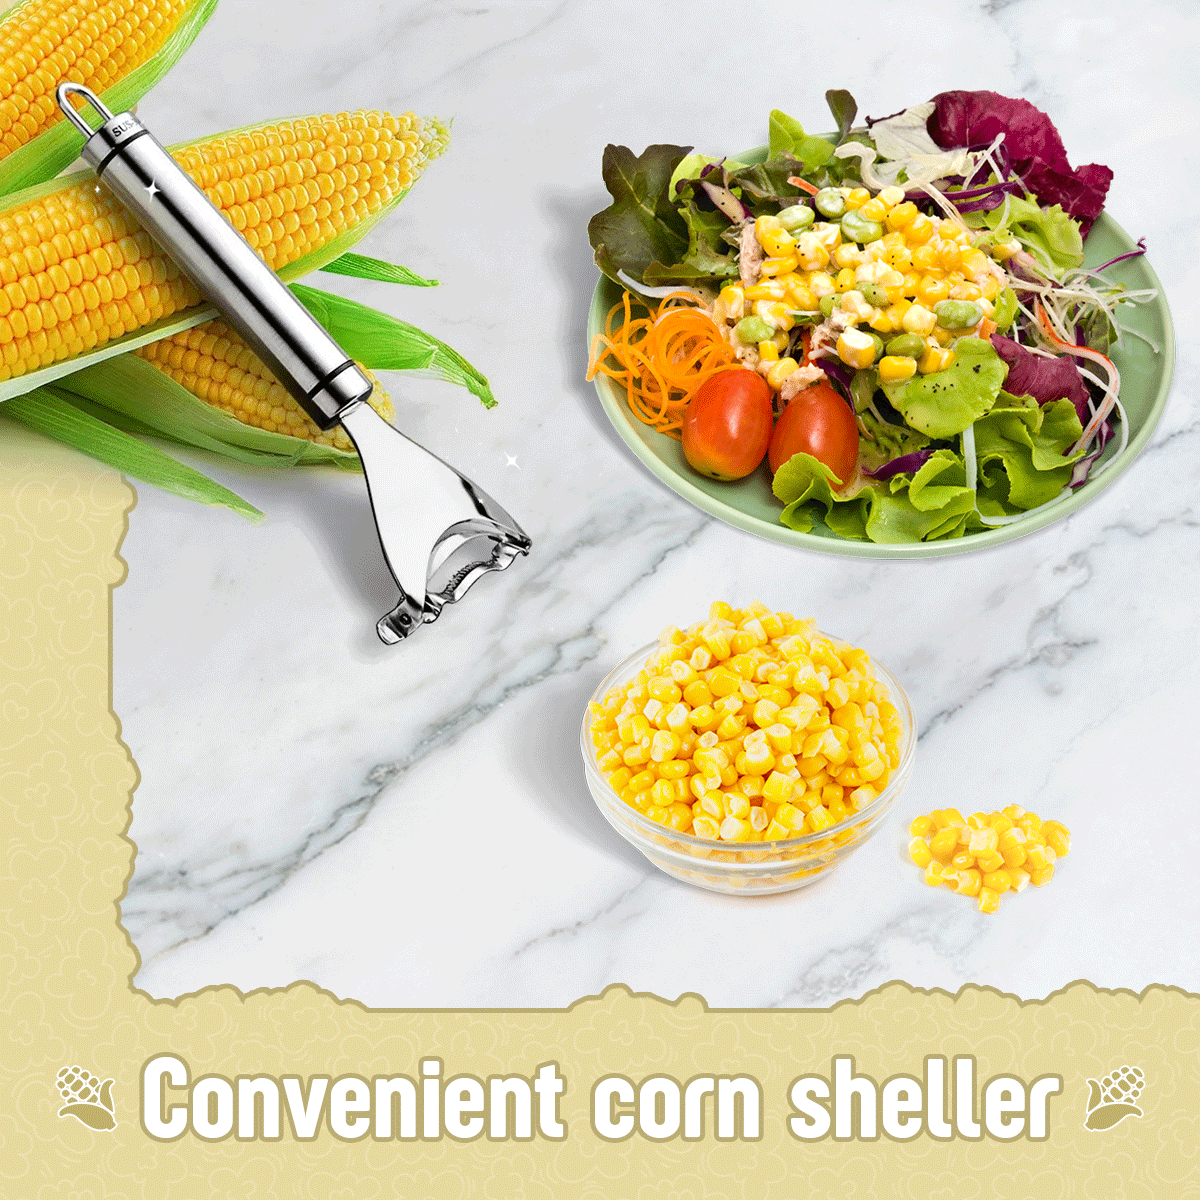 Handy Stainless Steel Corn Sheller